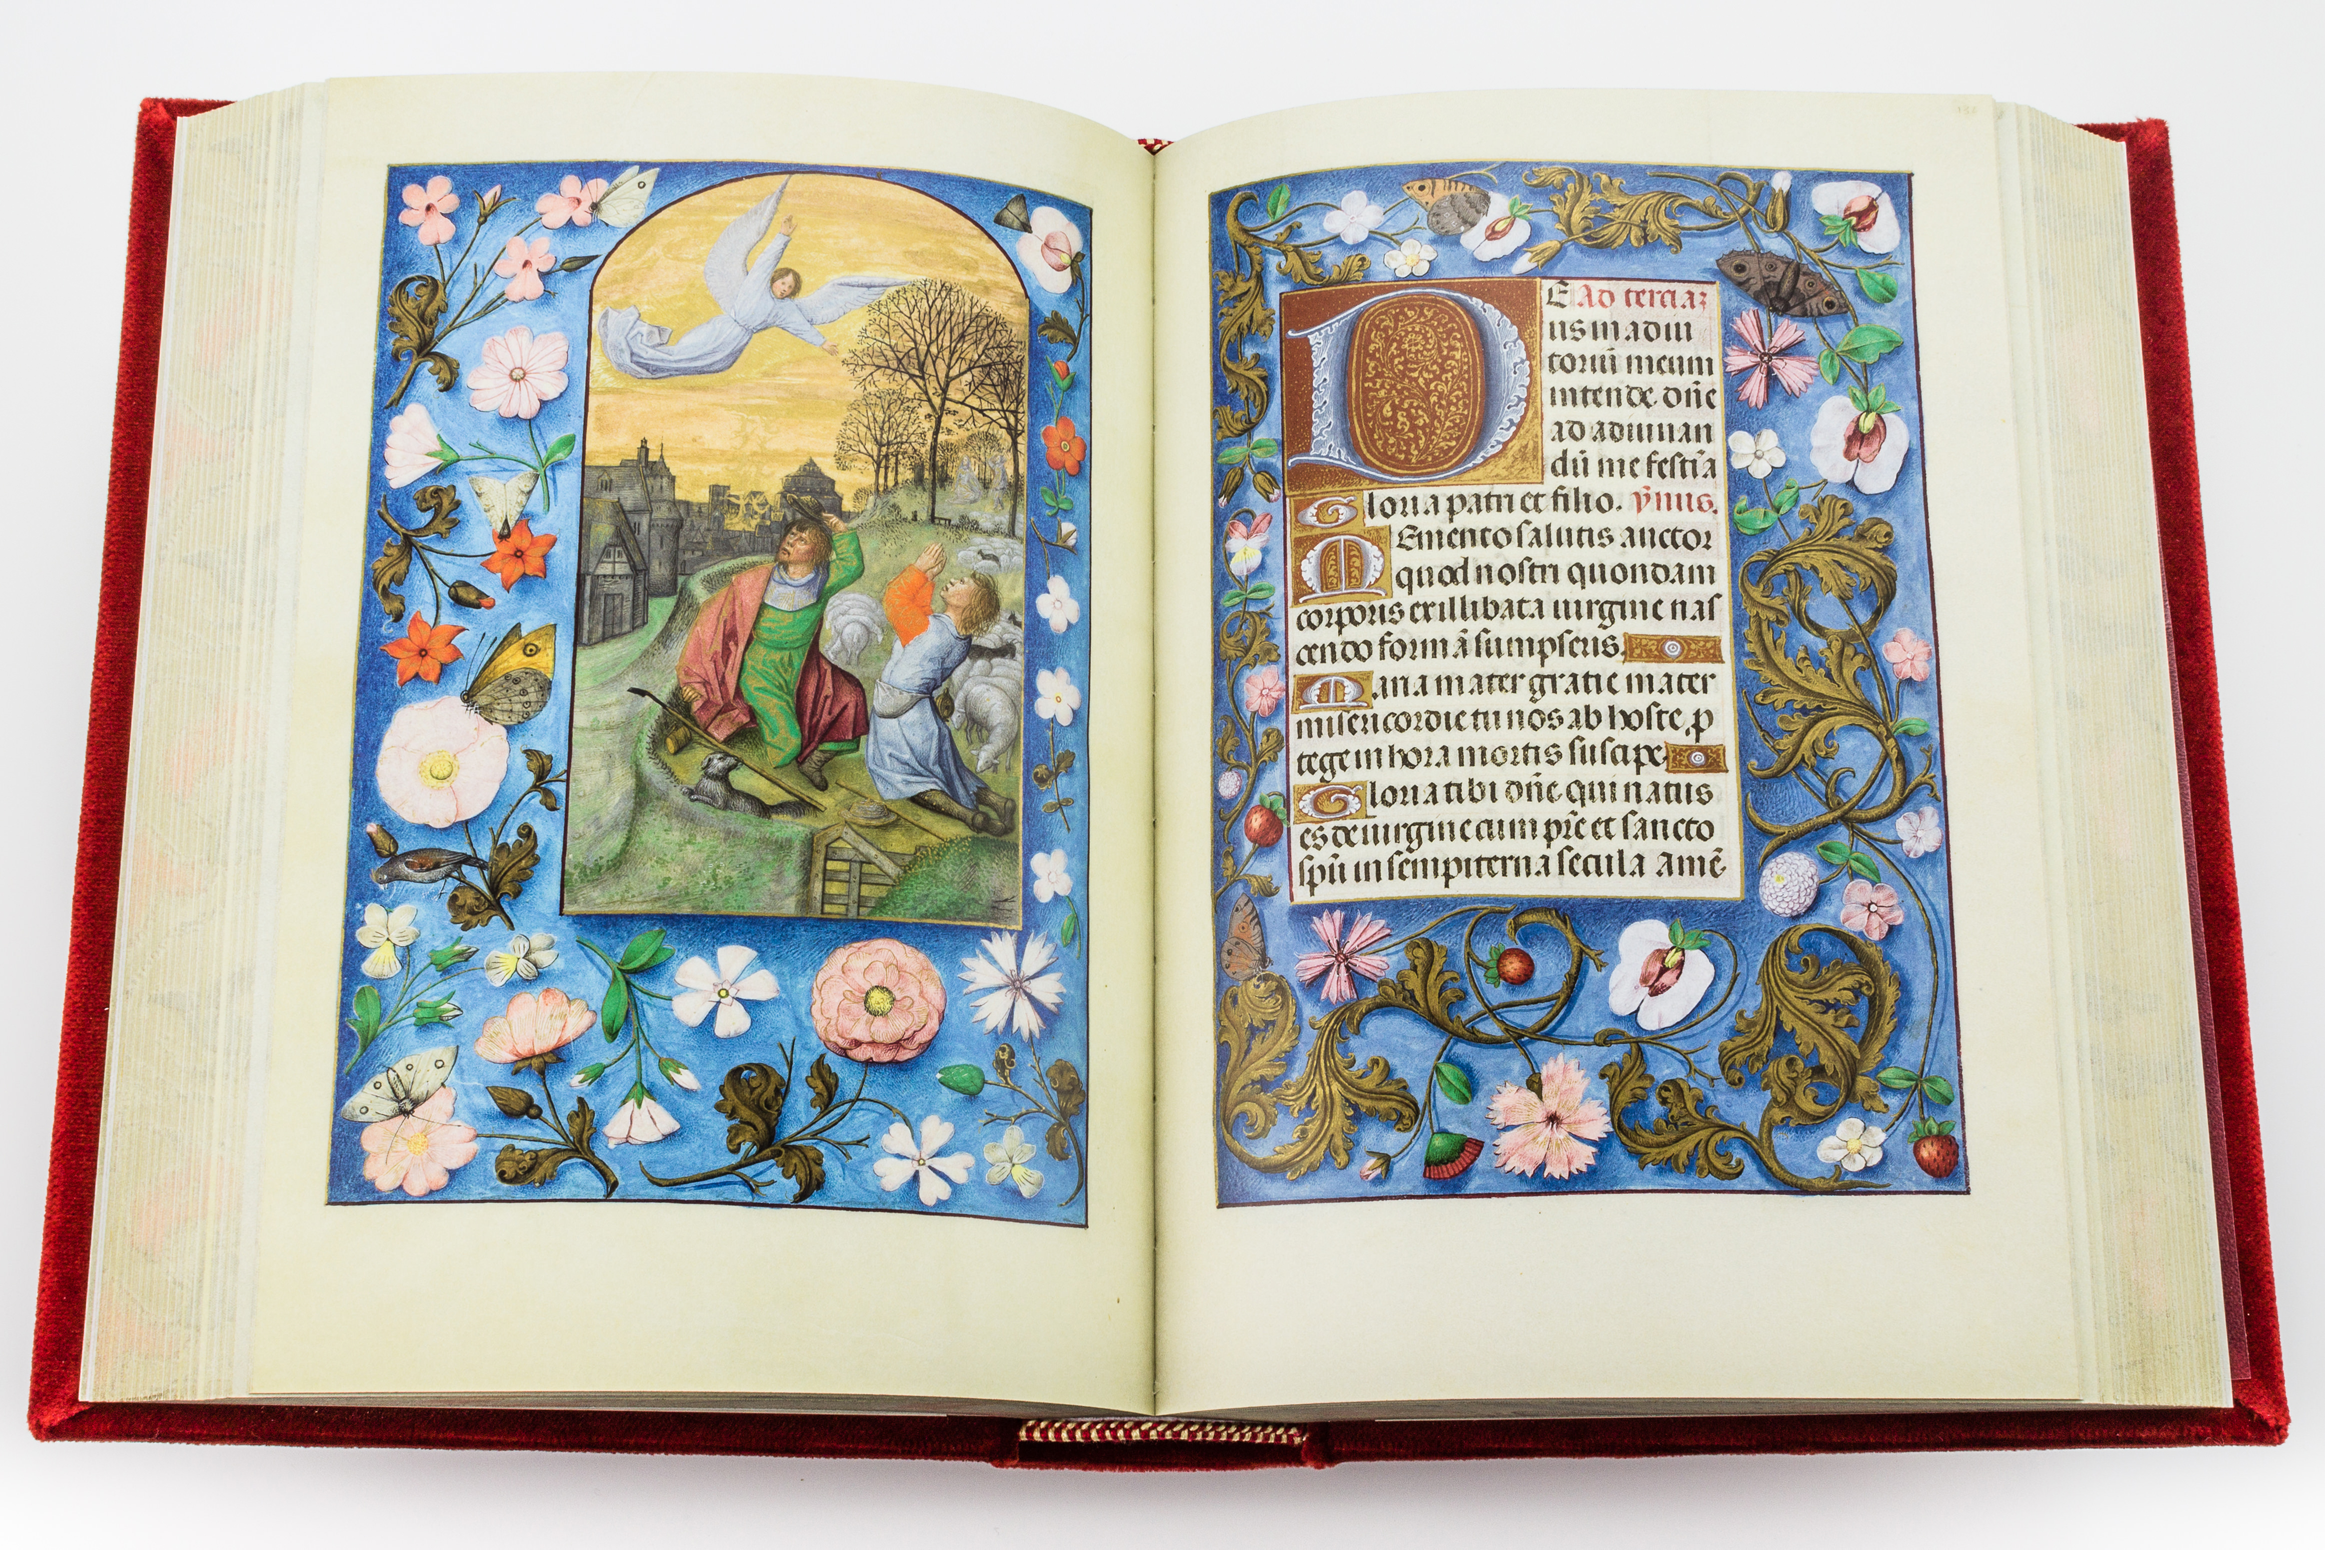 Isabella von Kastilien, Stundenbuch, flämische Meister, book of hours